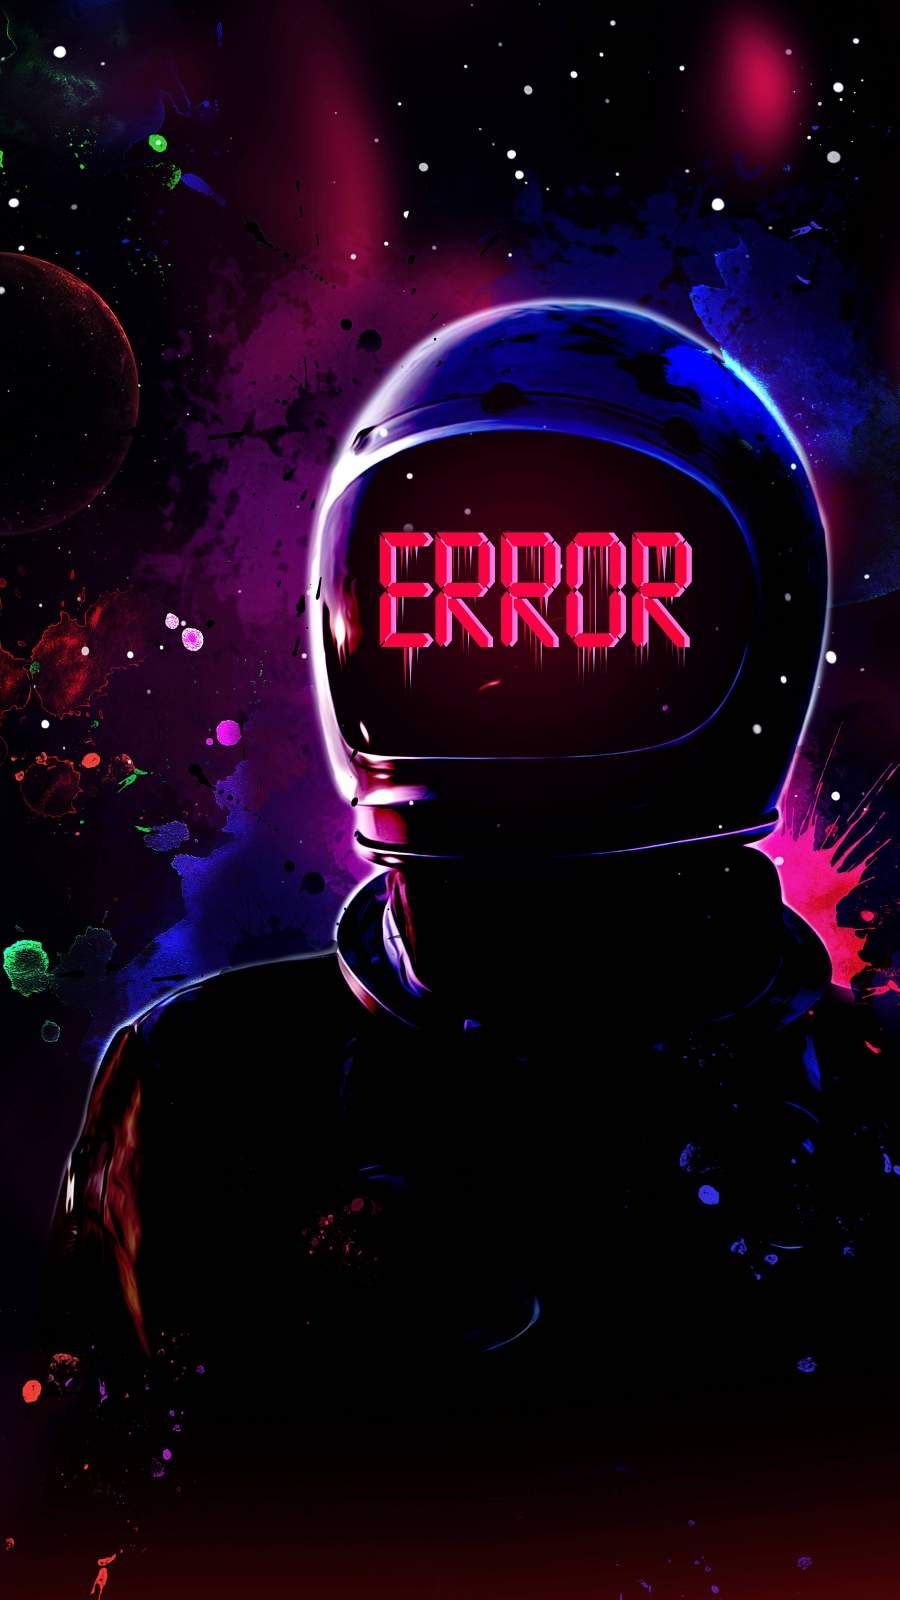 Astronaut Error iPhone Wallpaper. iPhone wallpaper, Hypebeast